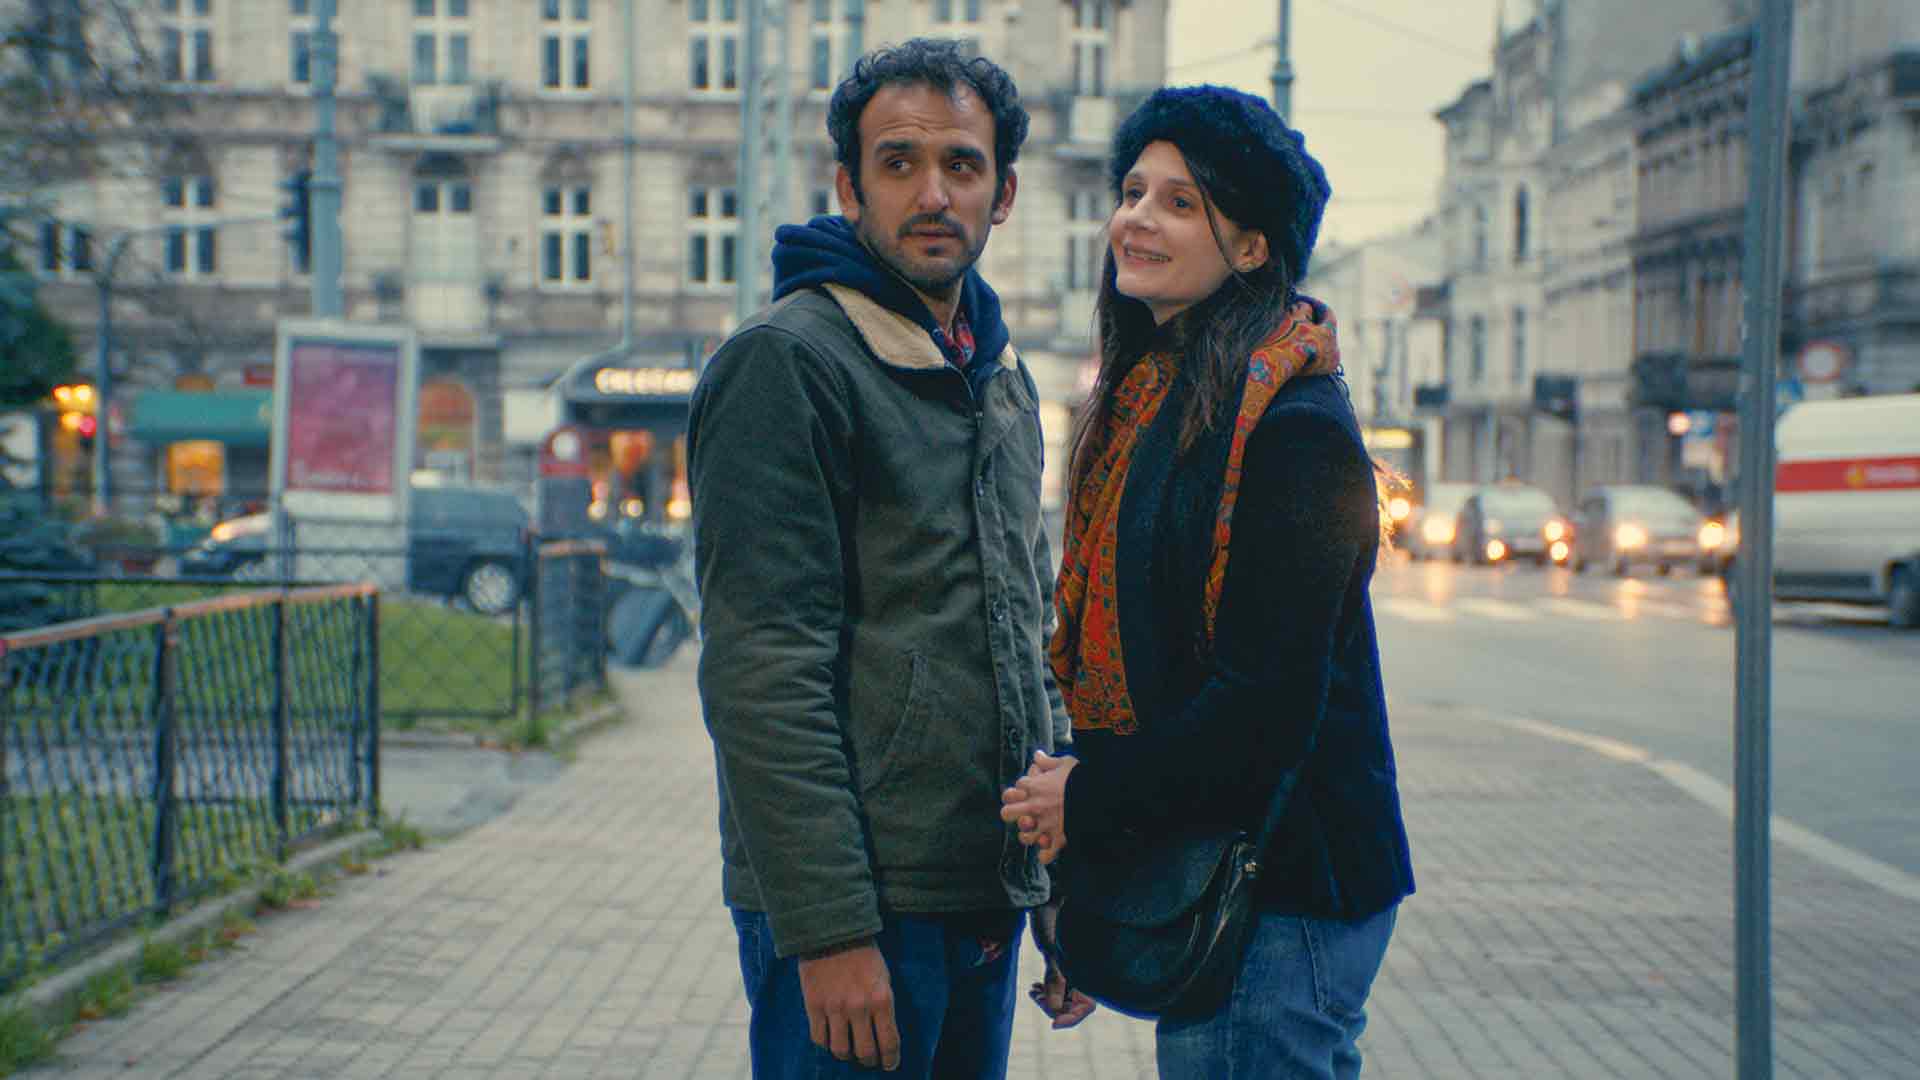 Visuel de Lune de Miel d'Elise Otzenberger. Un homme et une femme dans Paris regarde au loin face caméra.